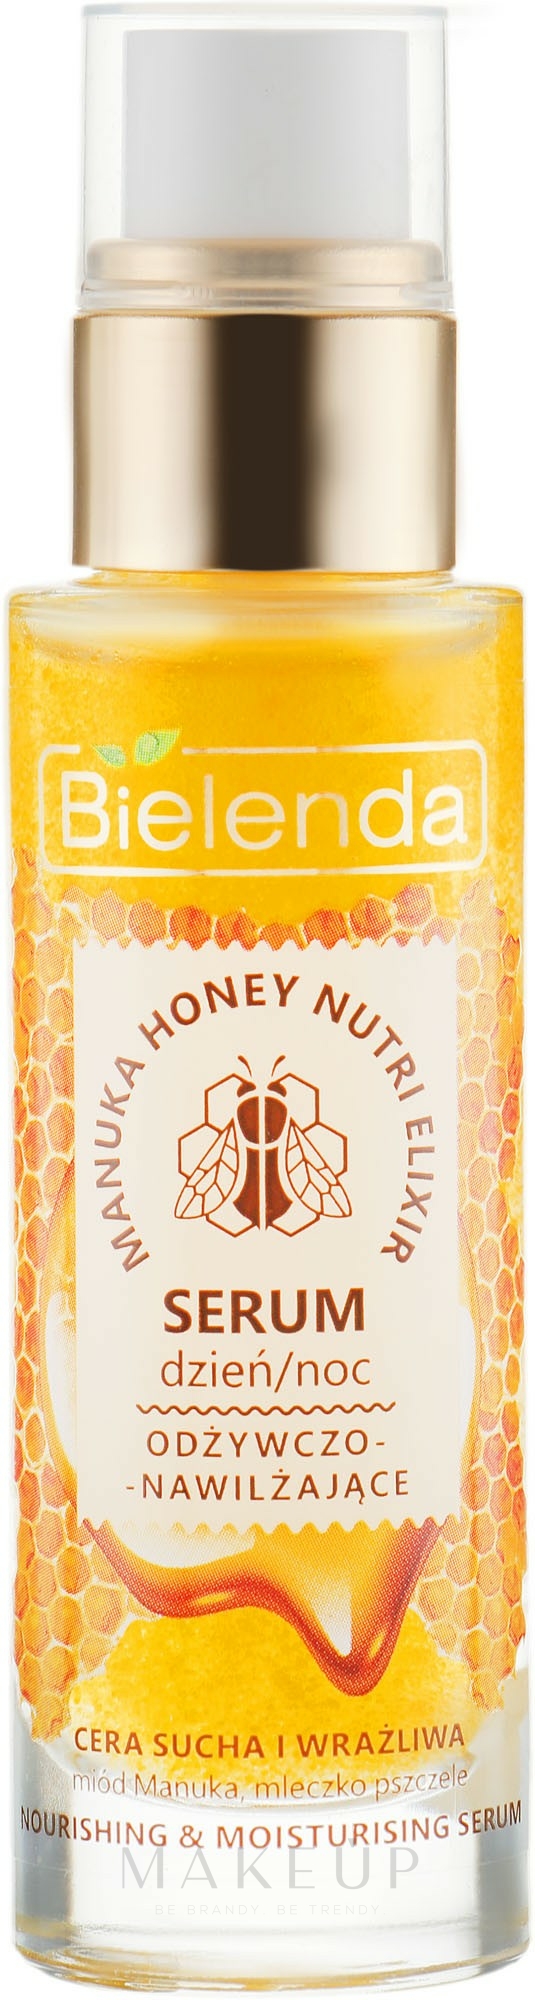 Pflegendes Gesichtsserum für die Tages- und Nachtpflege mit Manuka Honig und Gelée Royale - Bielenda Manuka Honey Nutri Elixir Serum — Bild 30 g